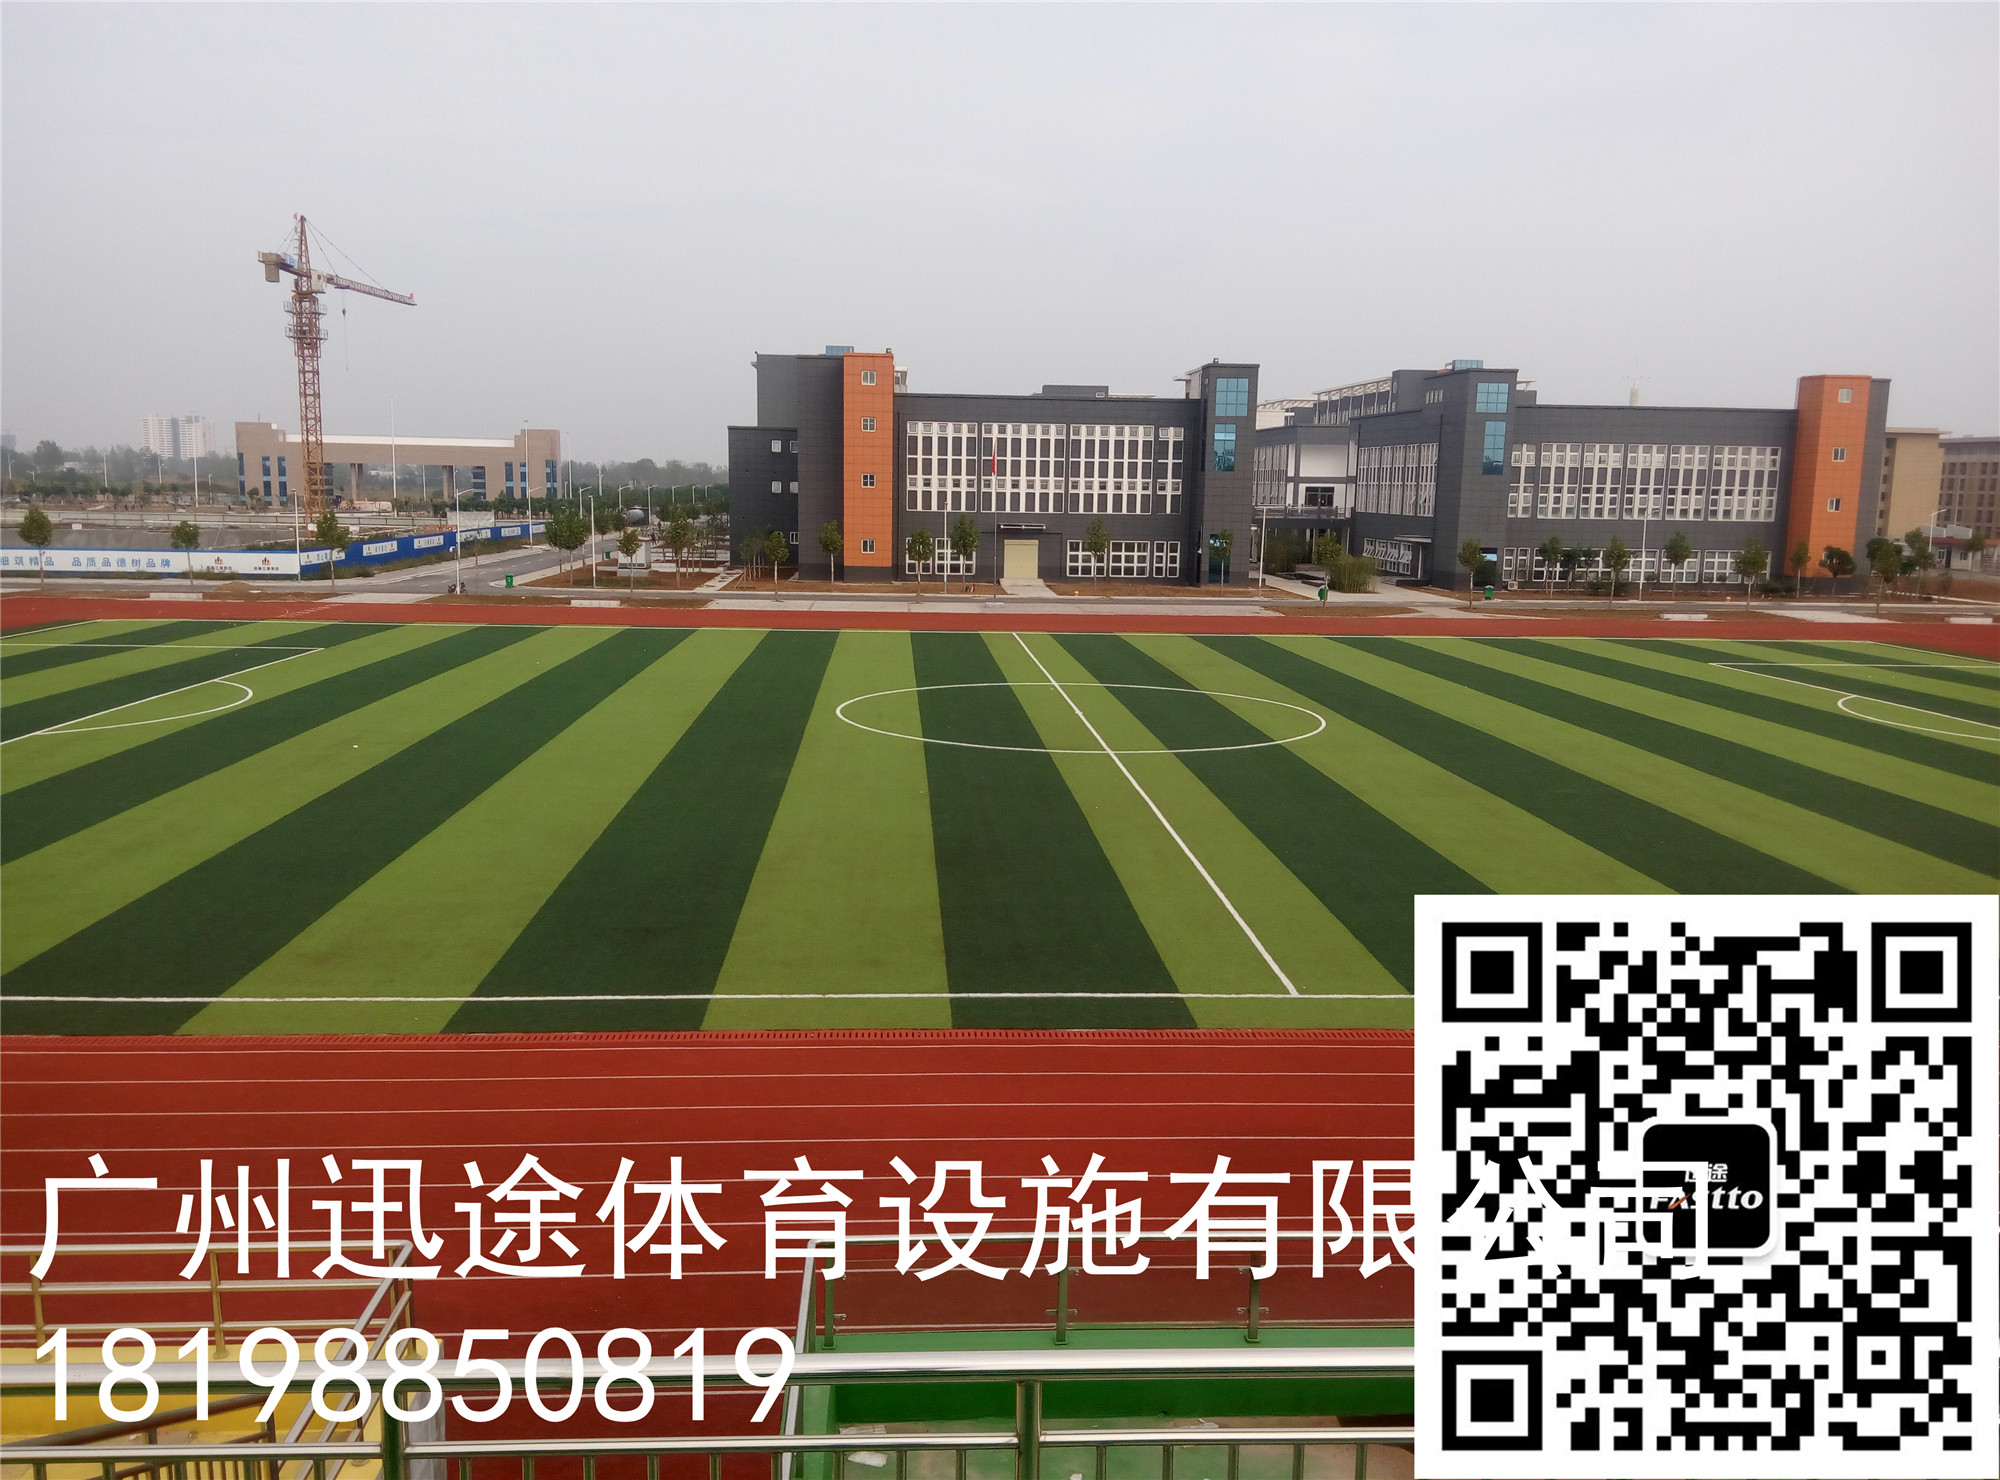 福建省霞浦青少年活动中心混合型塑胶跑道完工